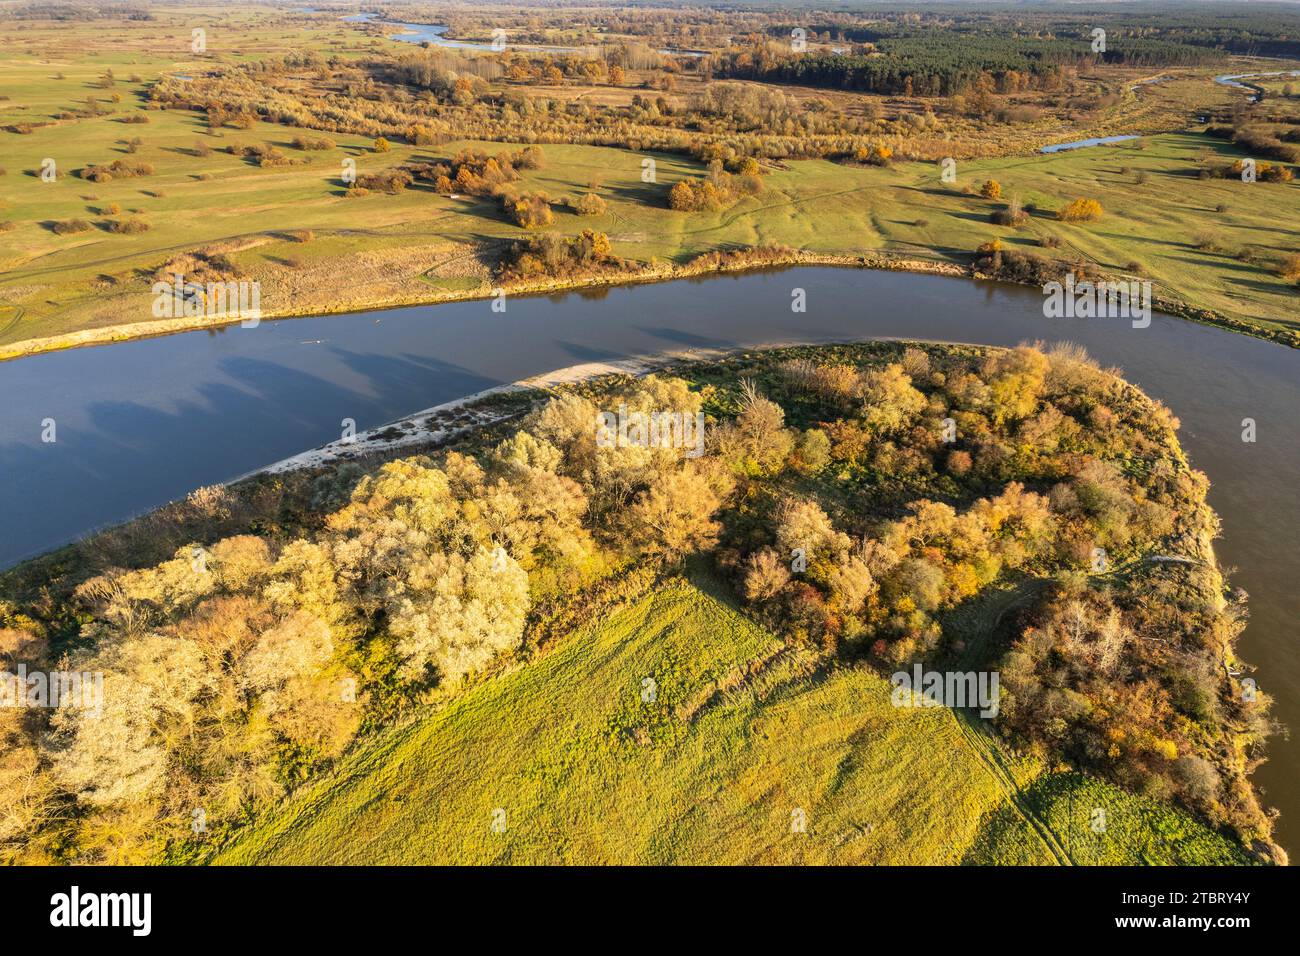 Europe, Poland, Voivodeship Masovian, Bug river near Branszczyk Stock Photo